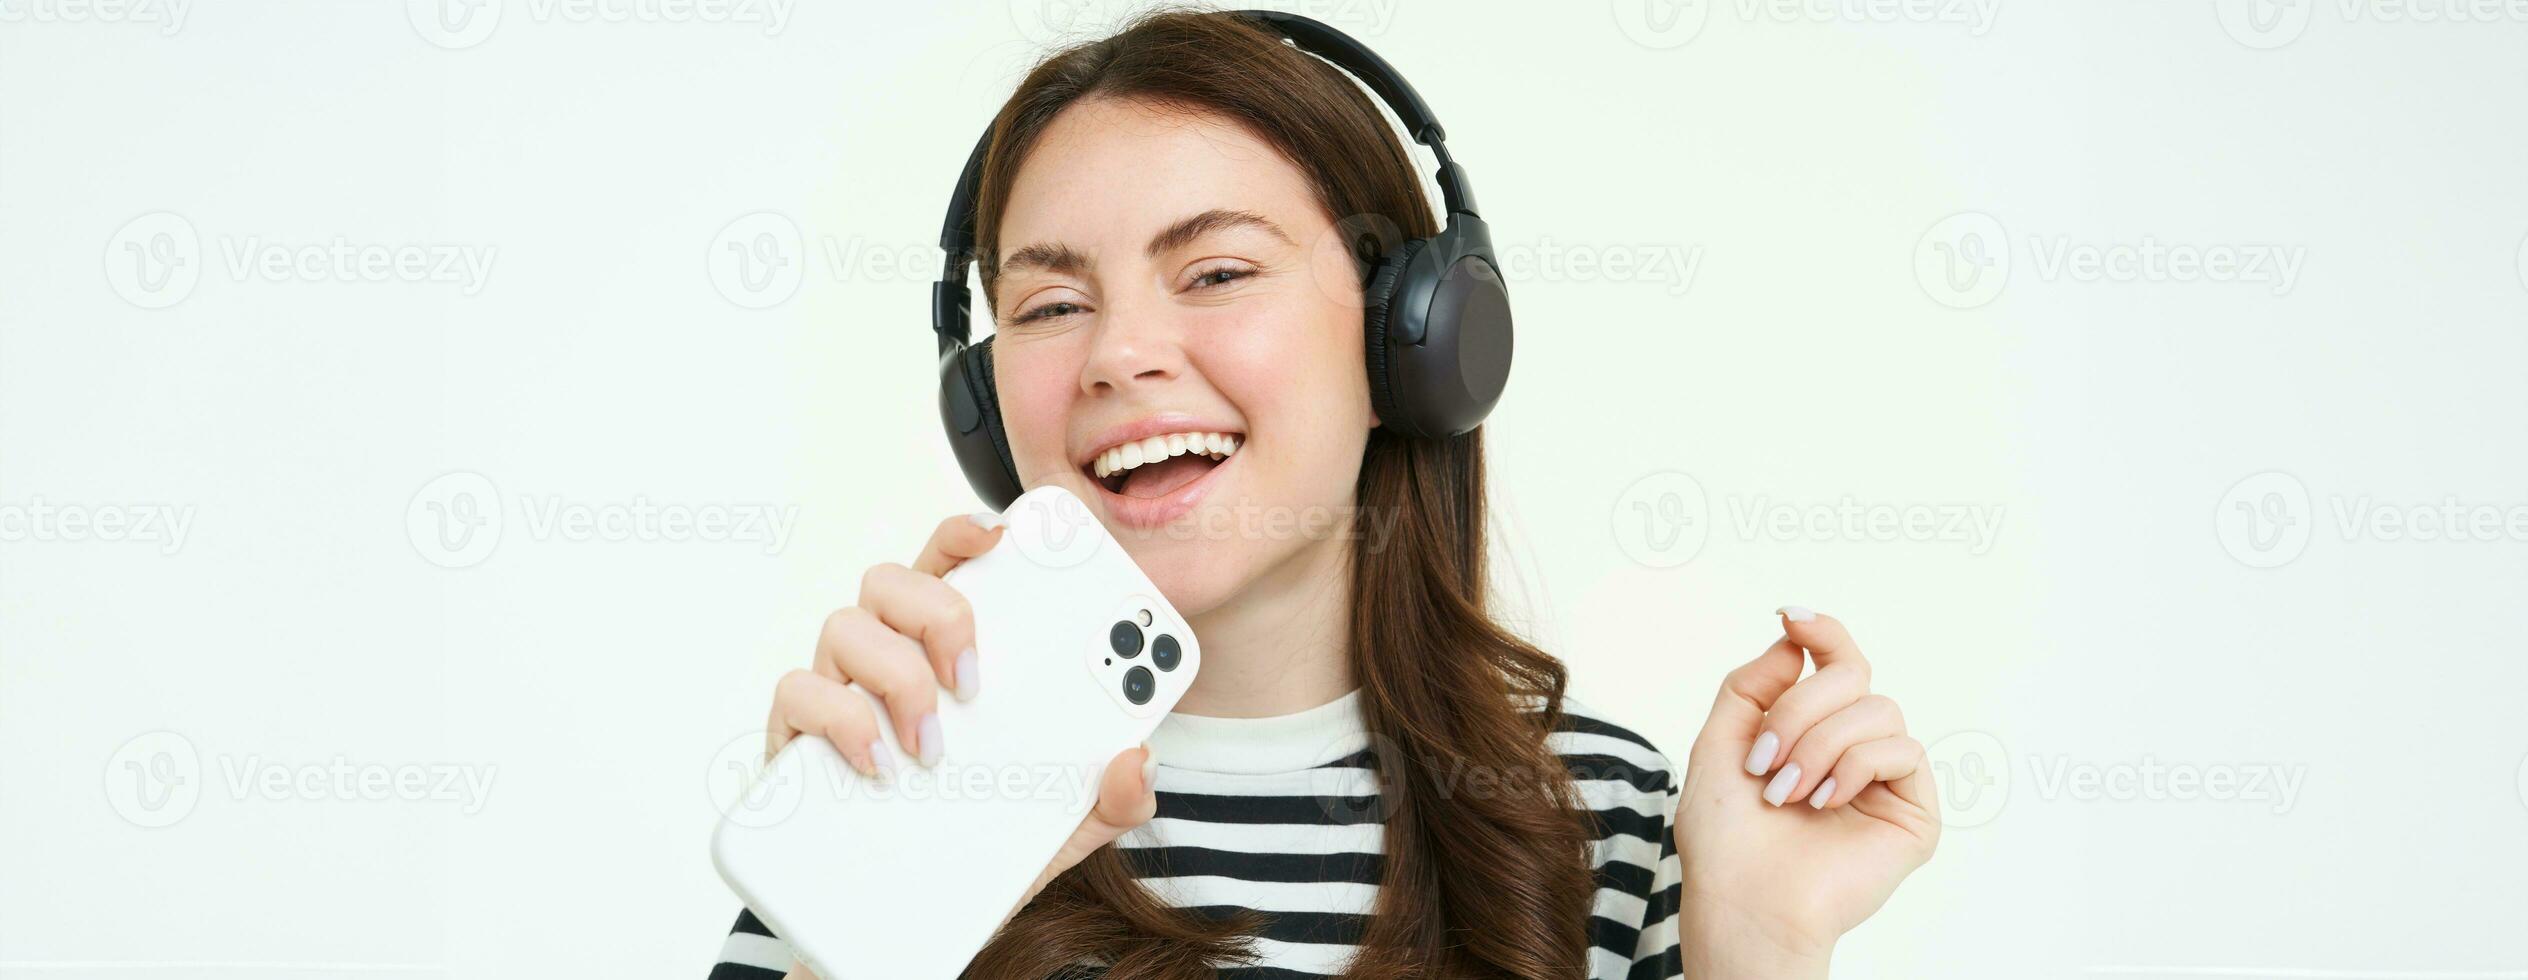 tecnologia e sociale media. ritratto di contento giovane donna cantando karaoke, giocando musica App su smartphone, indossare senza fili cuffia, in piedi al di sopra di bianca sfondo foto